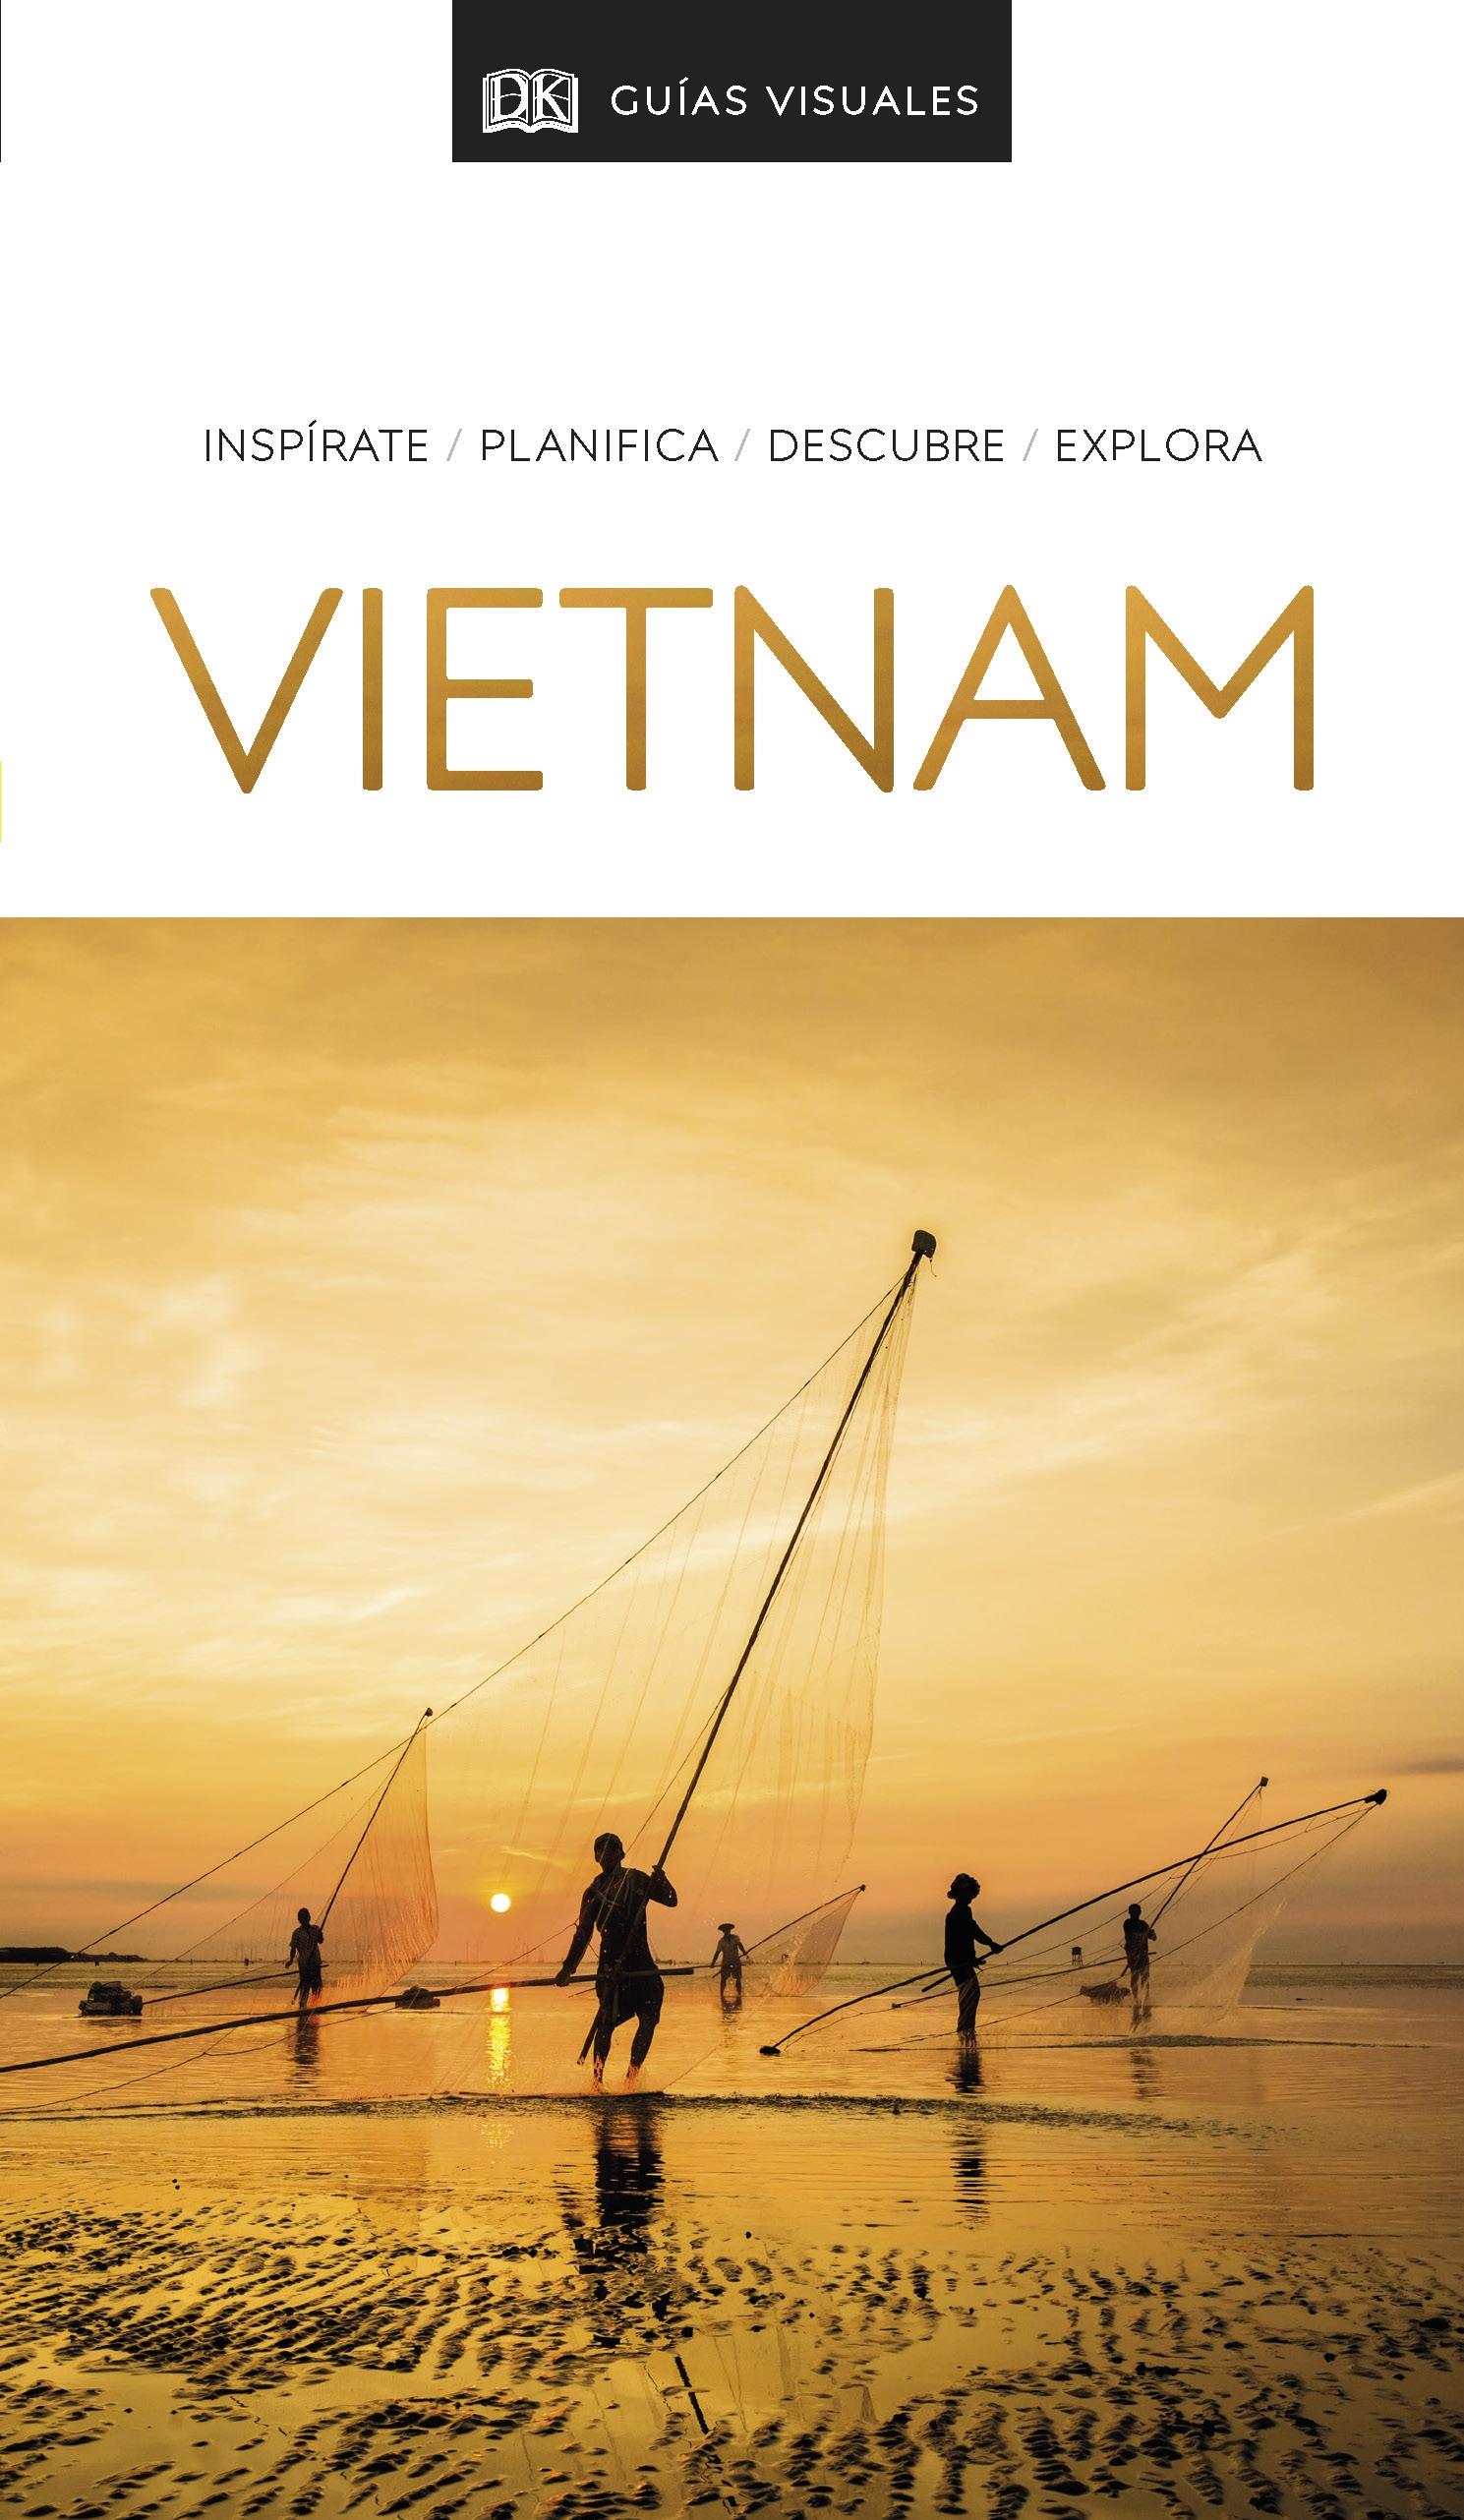 Guia Visual Vietnam 2020. 